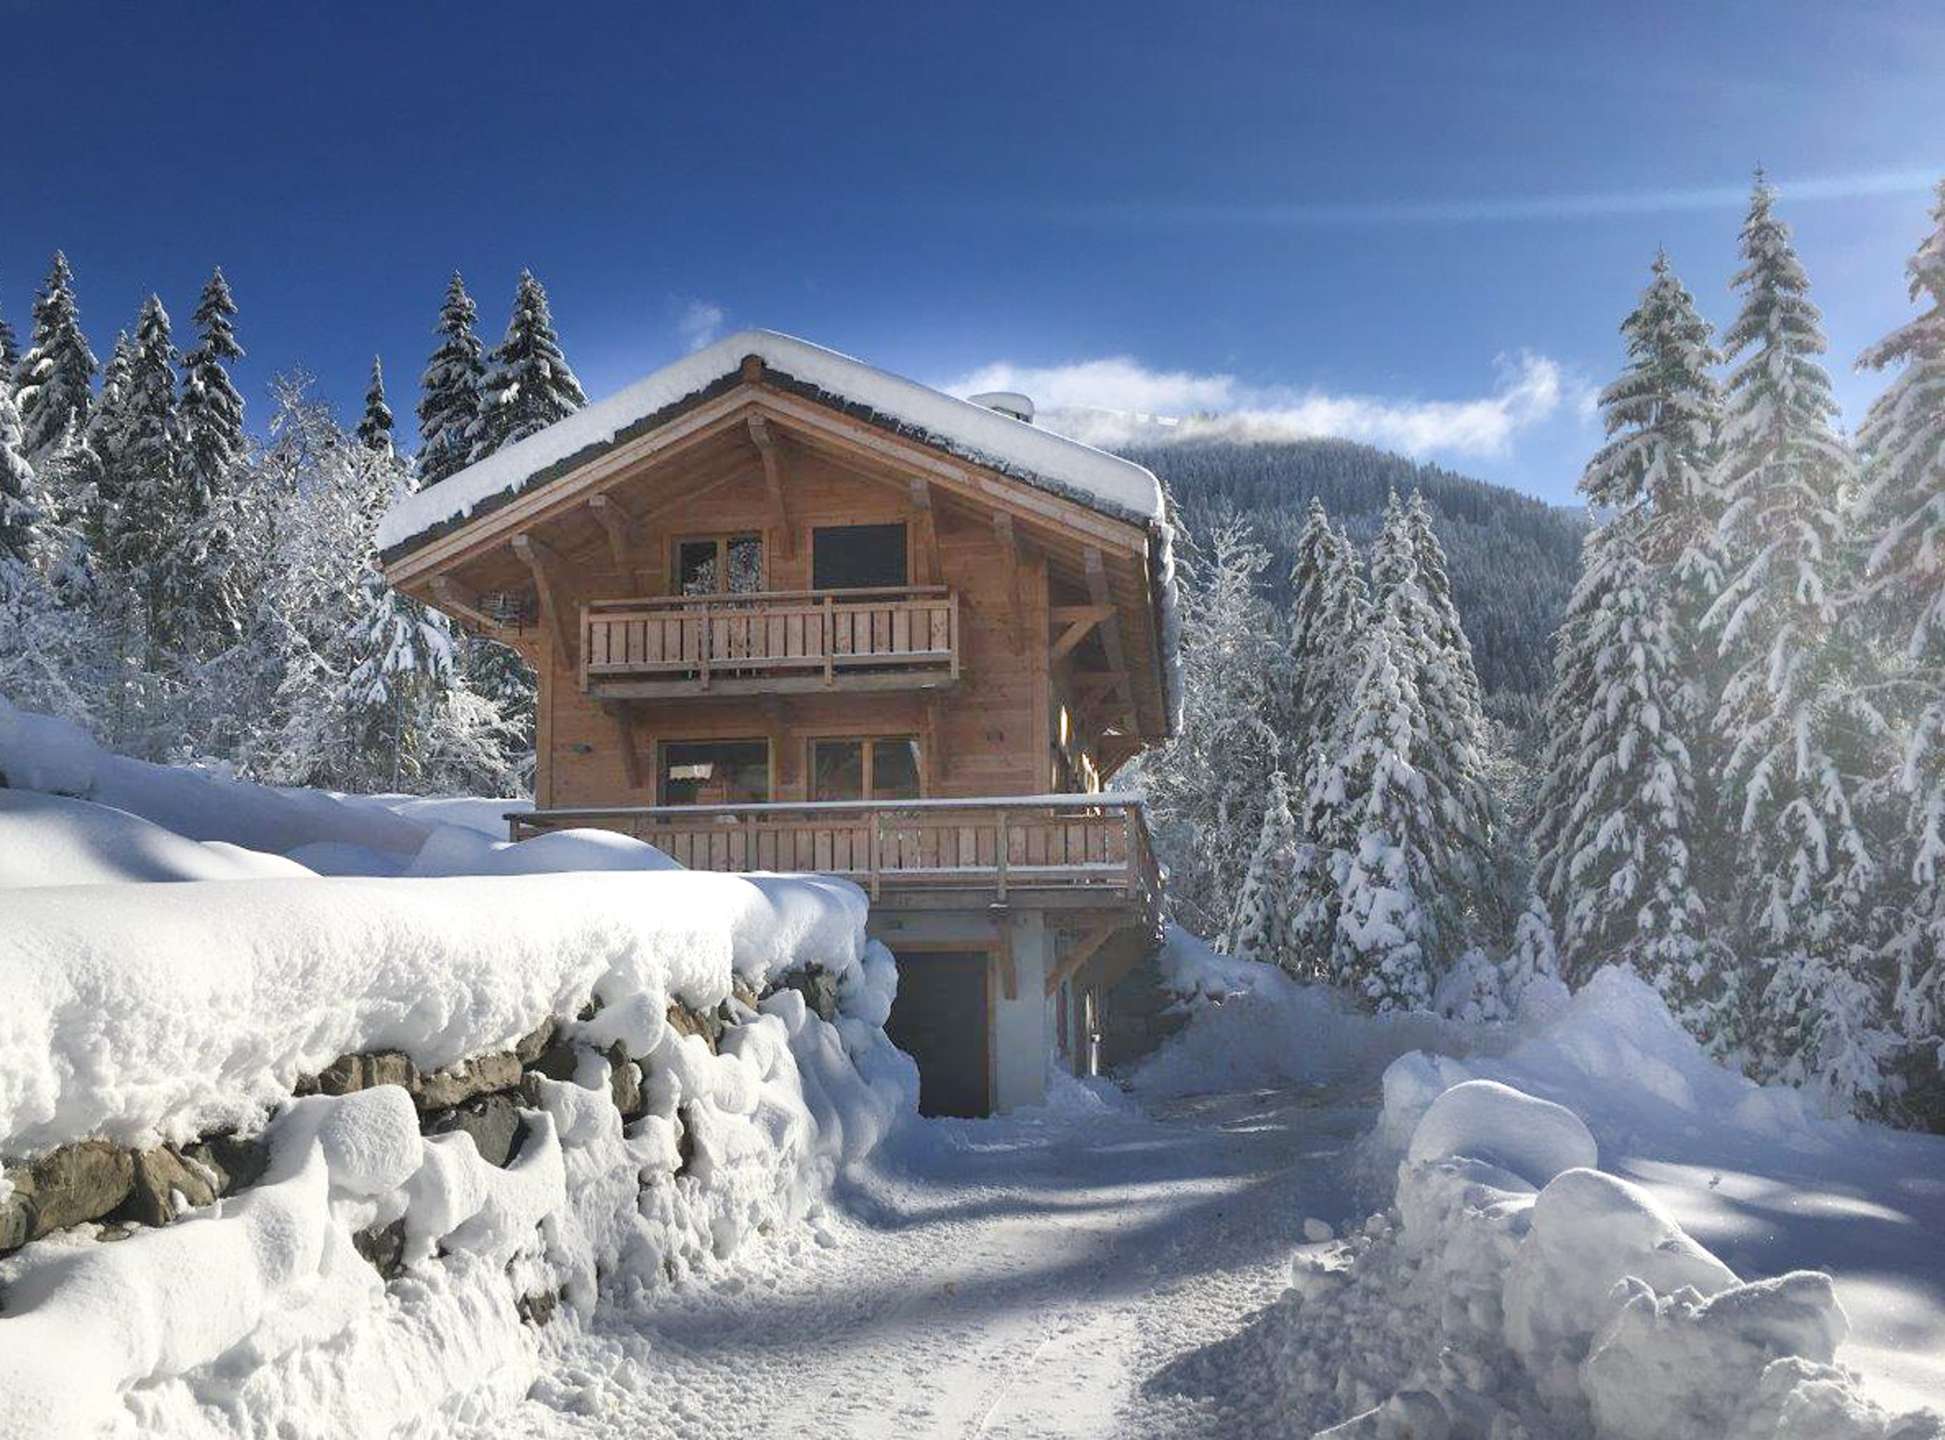 Location CHARGEAU 2 , MORZINE  Station de ski familiale en Haute Savoie